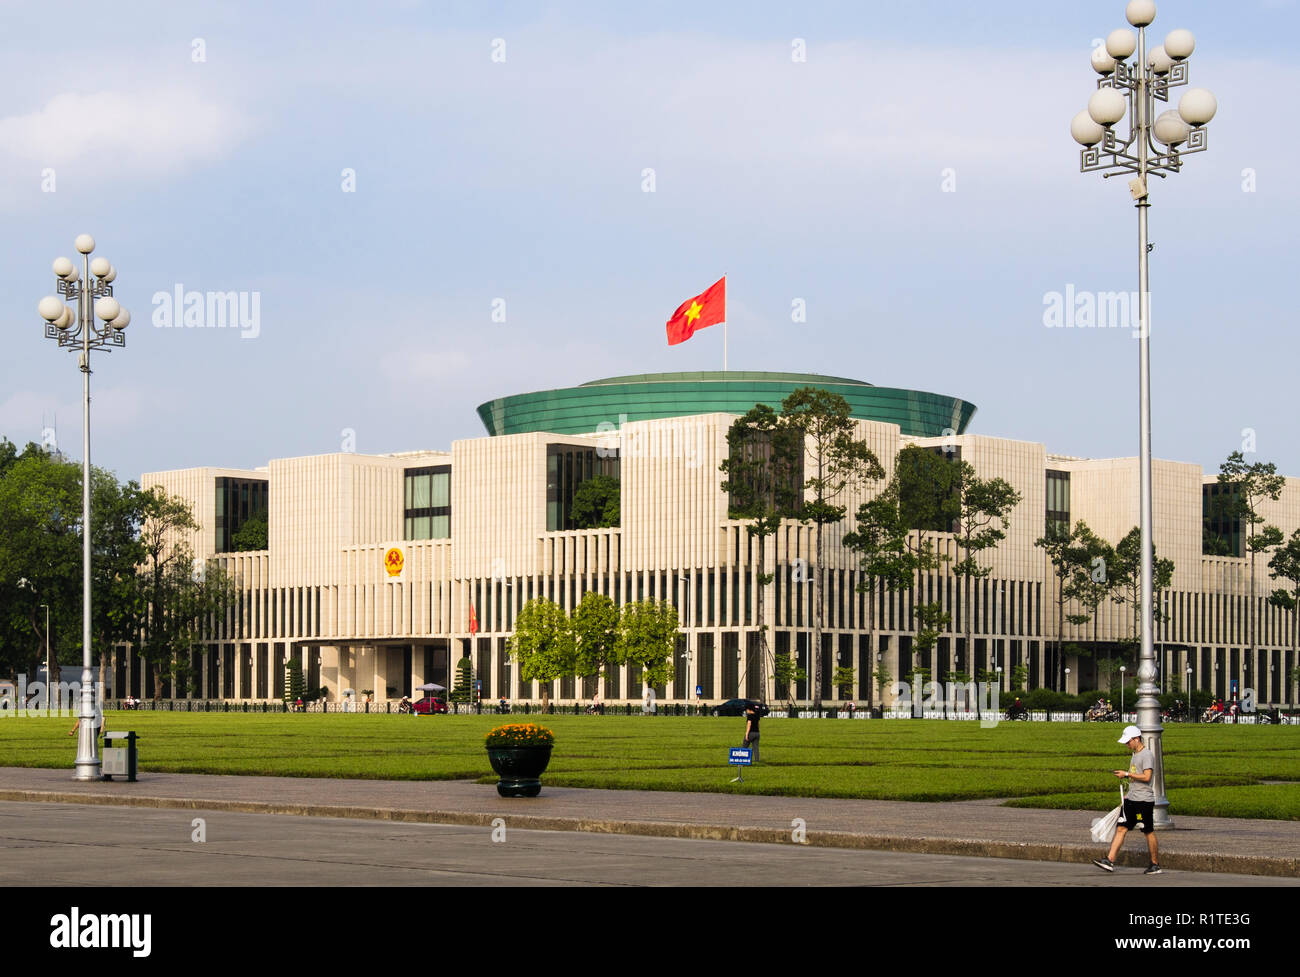 Vietnamesische Flagge auf neuen 21. Jahrhundert moderne Nationale Montage Haus Parlamentsgebäude. Hanoi, Vietnam, Asien Stockfoto